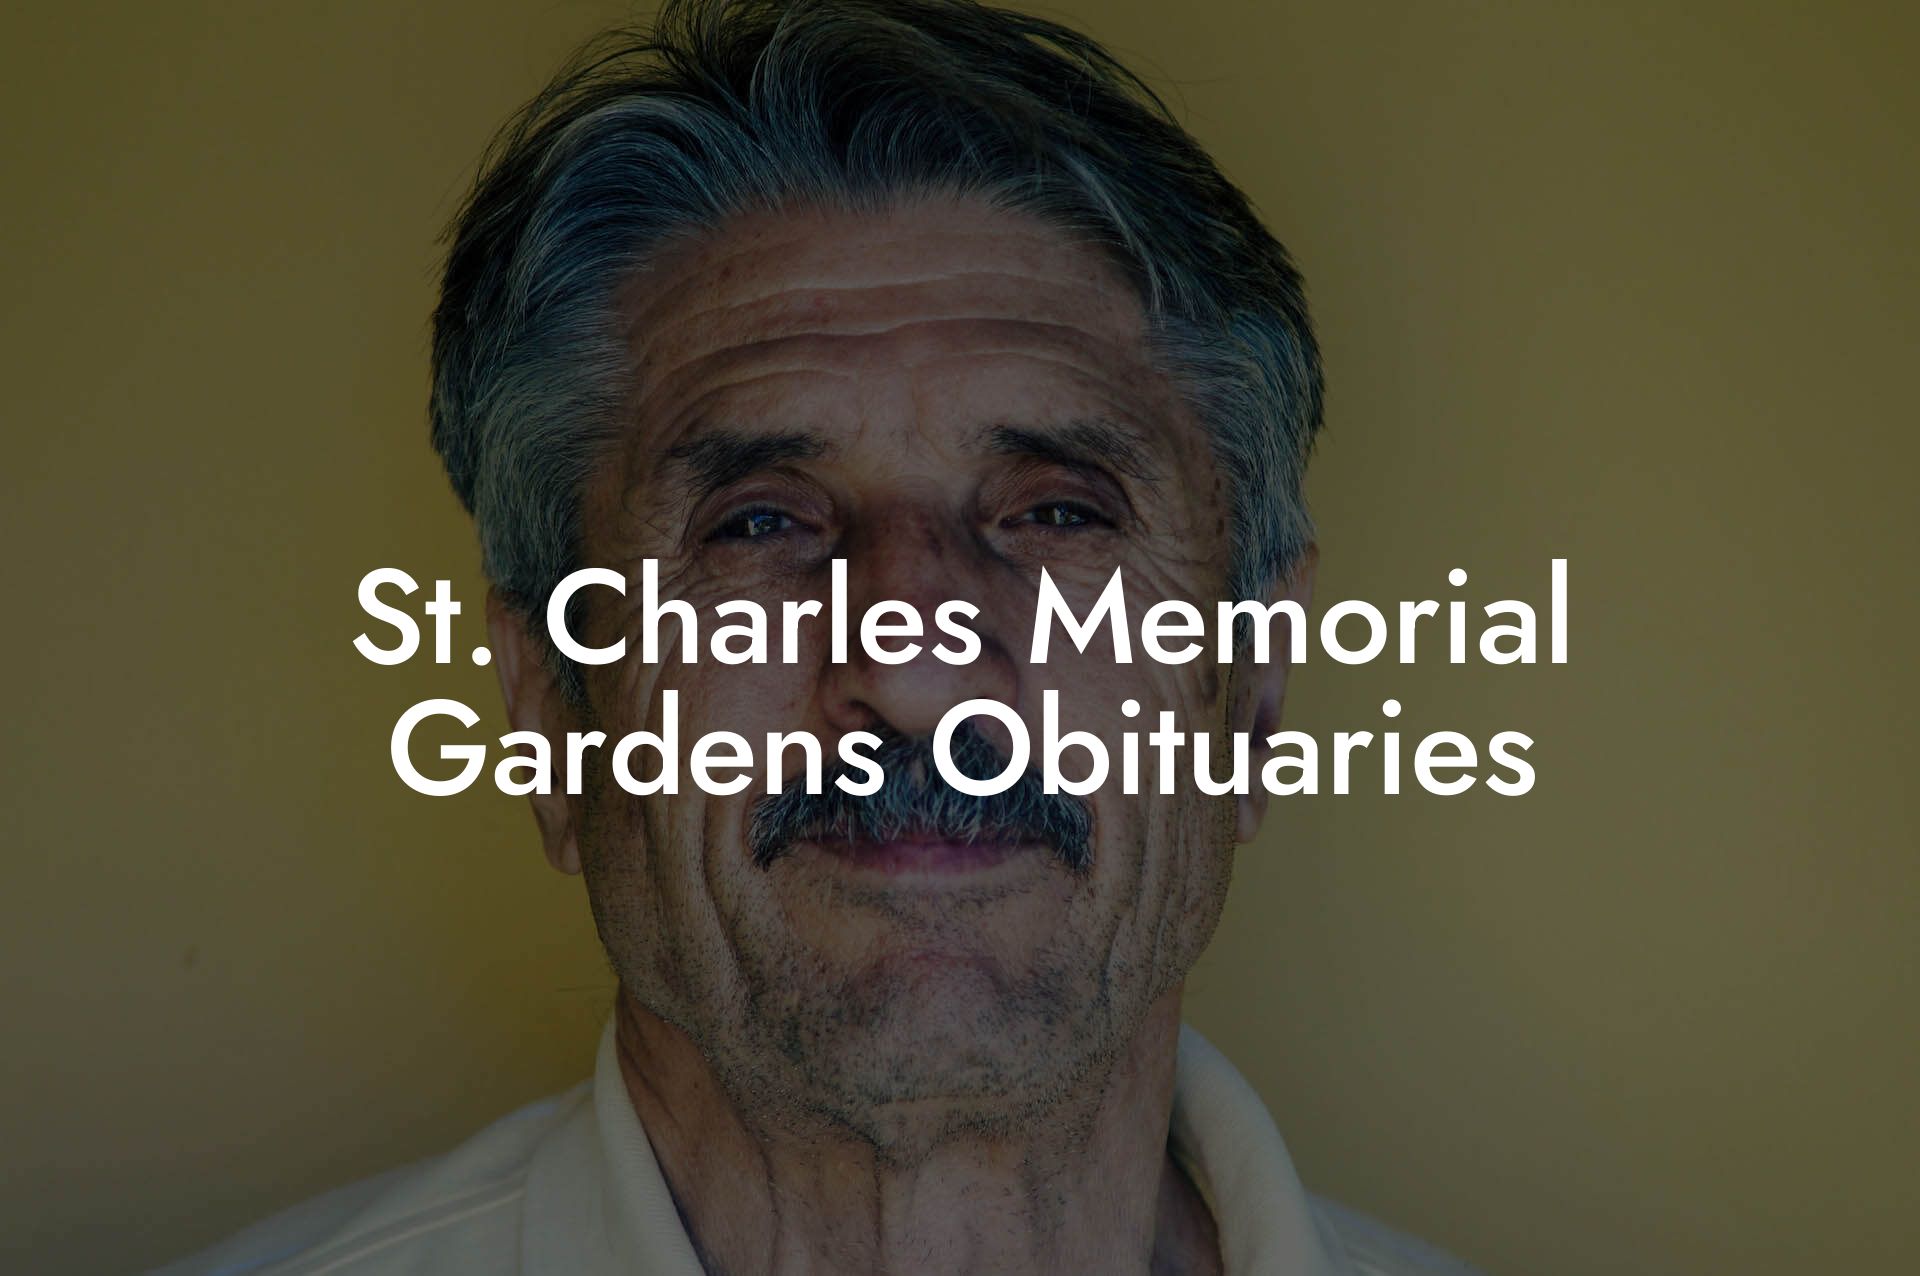 St. Charles Memorial Gardens Obituaries